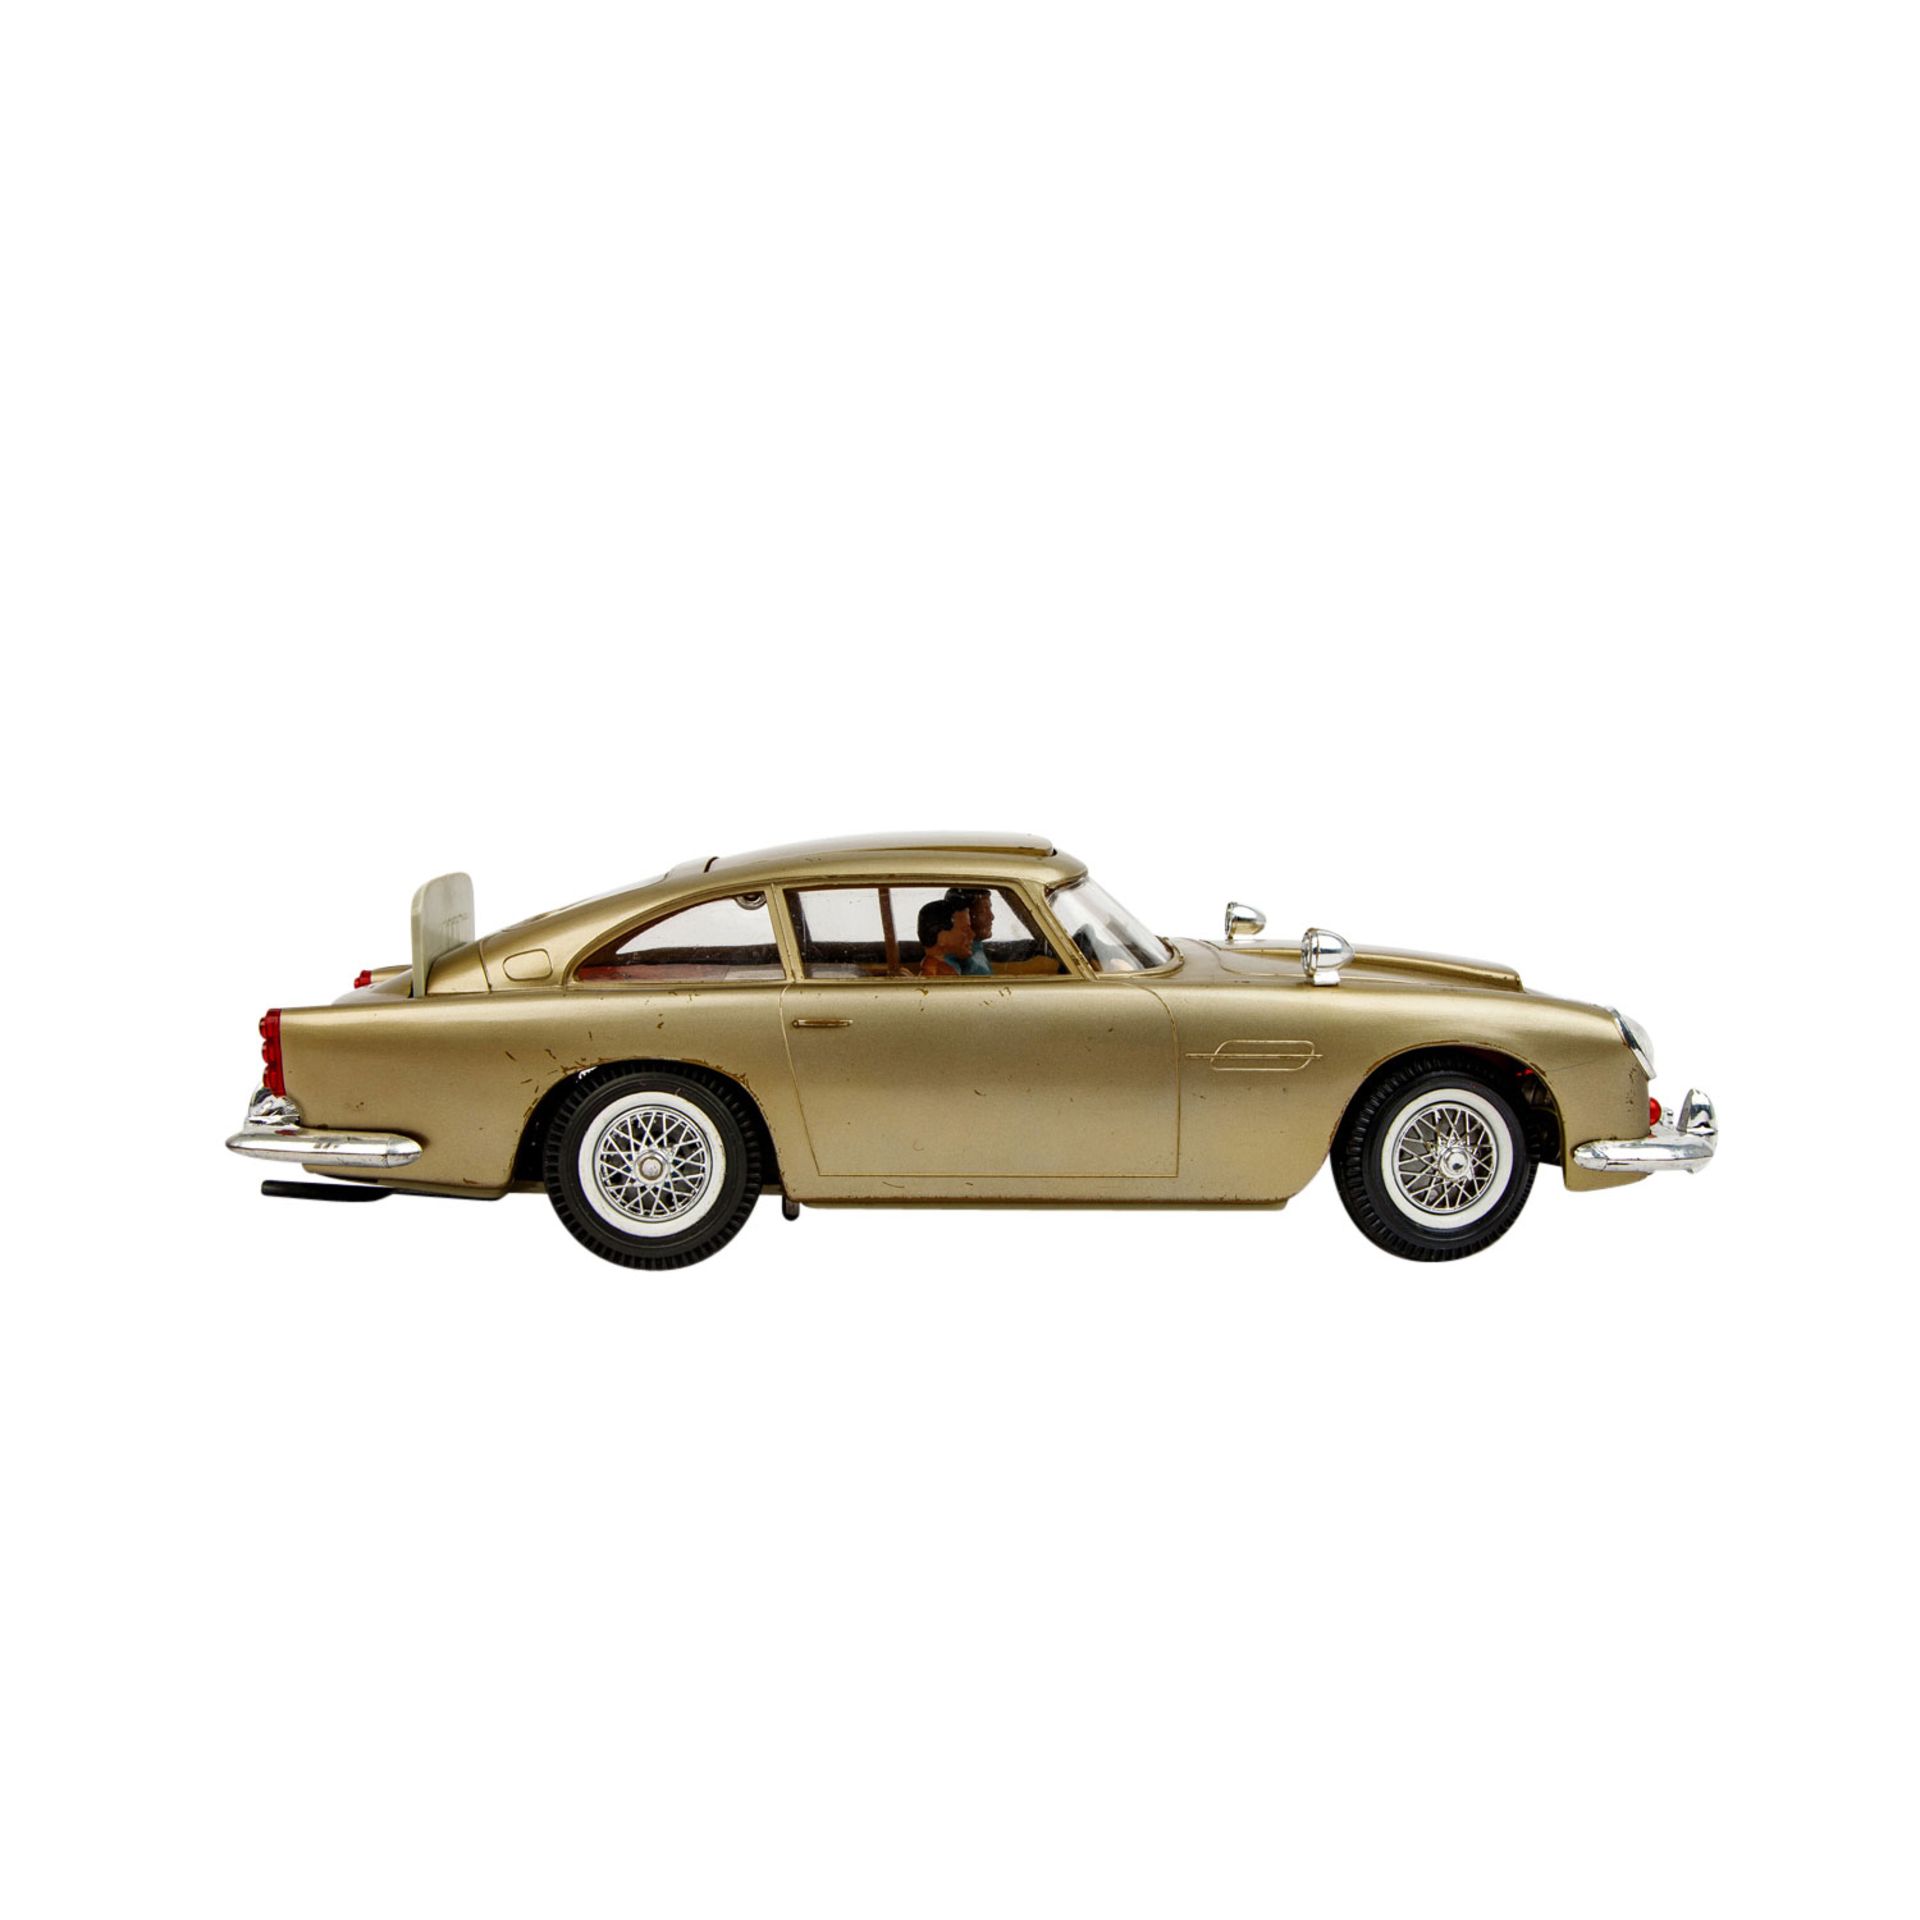 GAMA Modellfahrzeug Nr. 4900 "James Bond 007 Goldfinger", 1960er Jahre, - Bild 5 aus 9